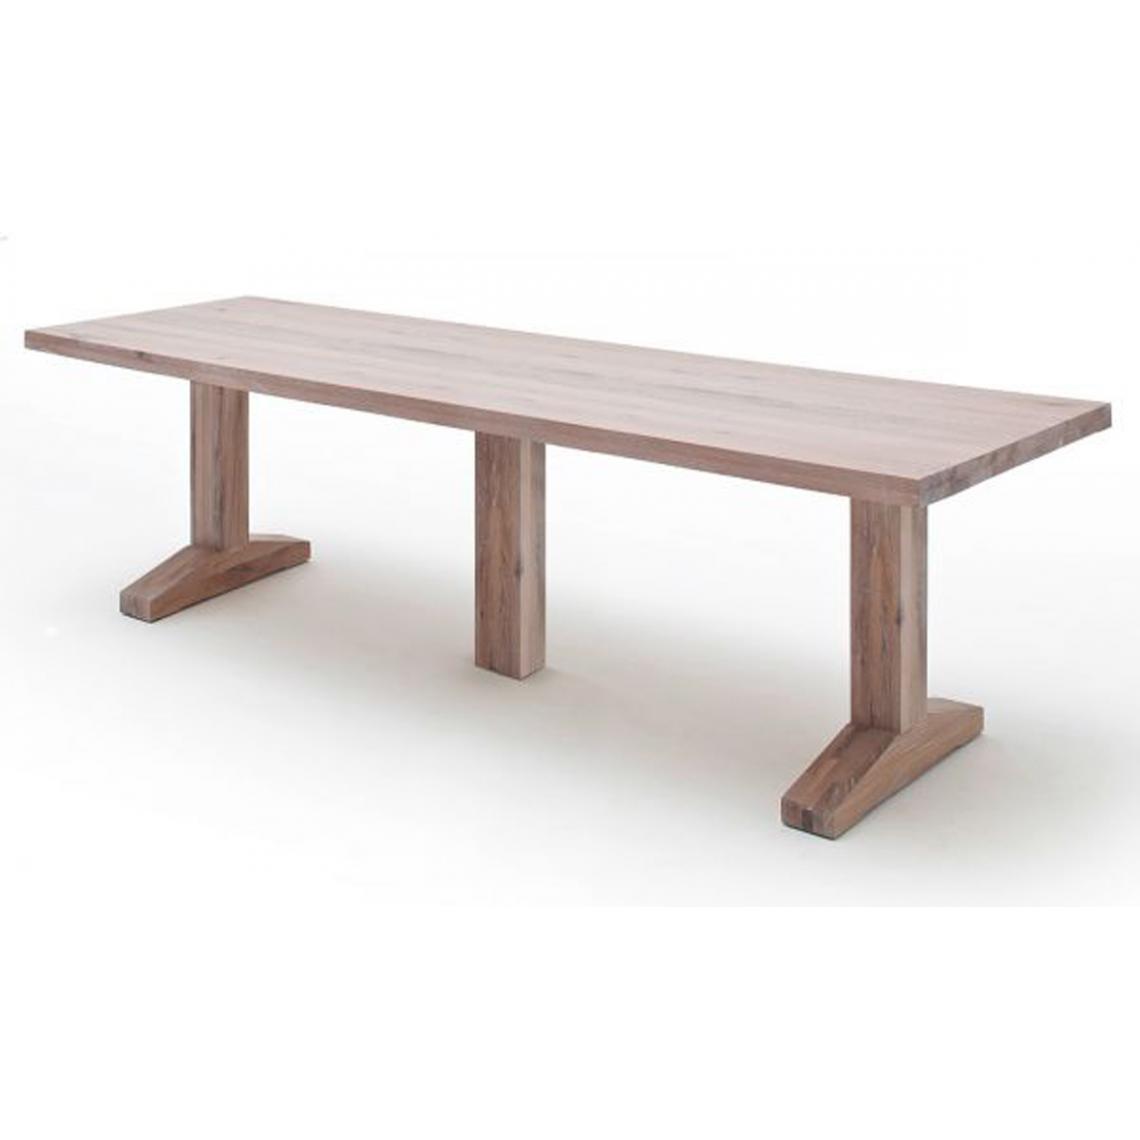 Pegane - Table à manger en chêne chaulé laqué mat, massif - L.400 x H.76 x P.120 cm -PEGANE- - Tables à manger